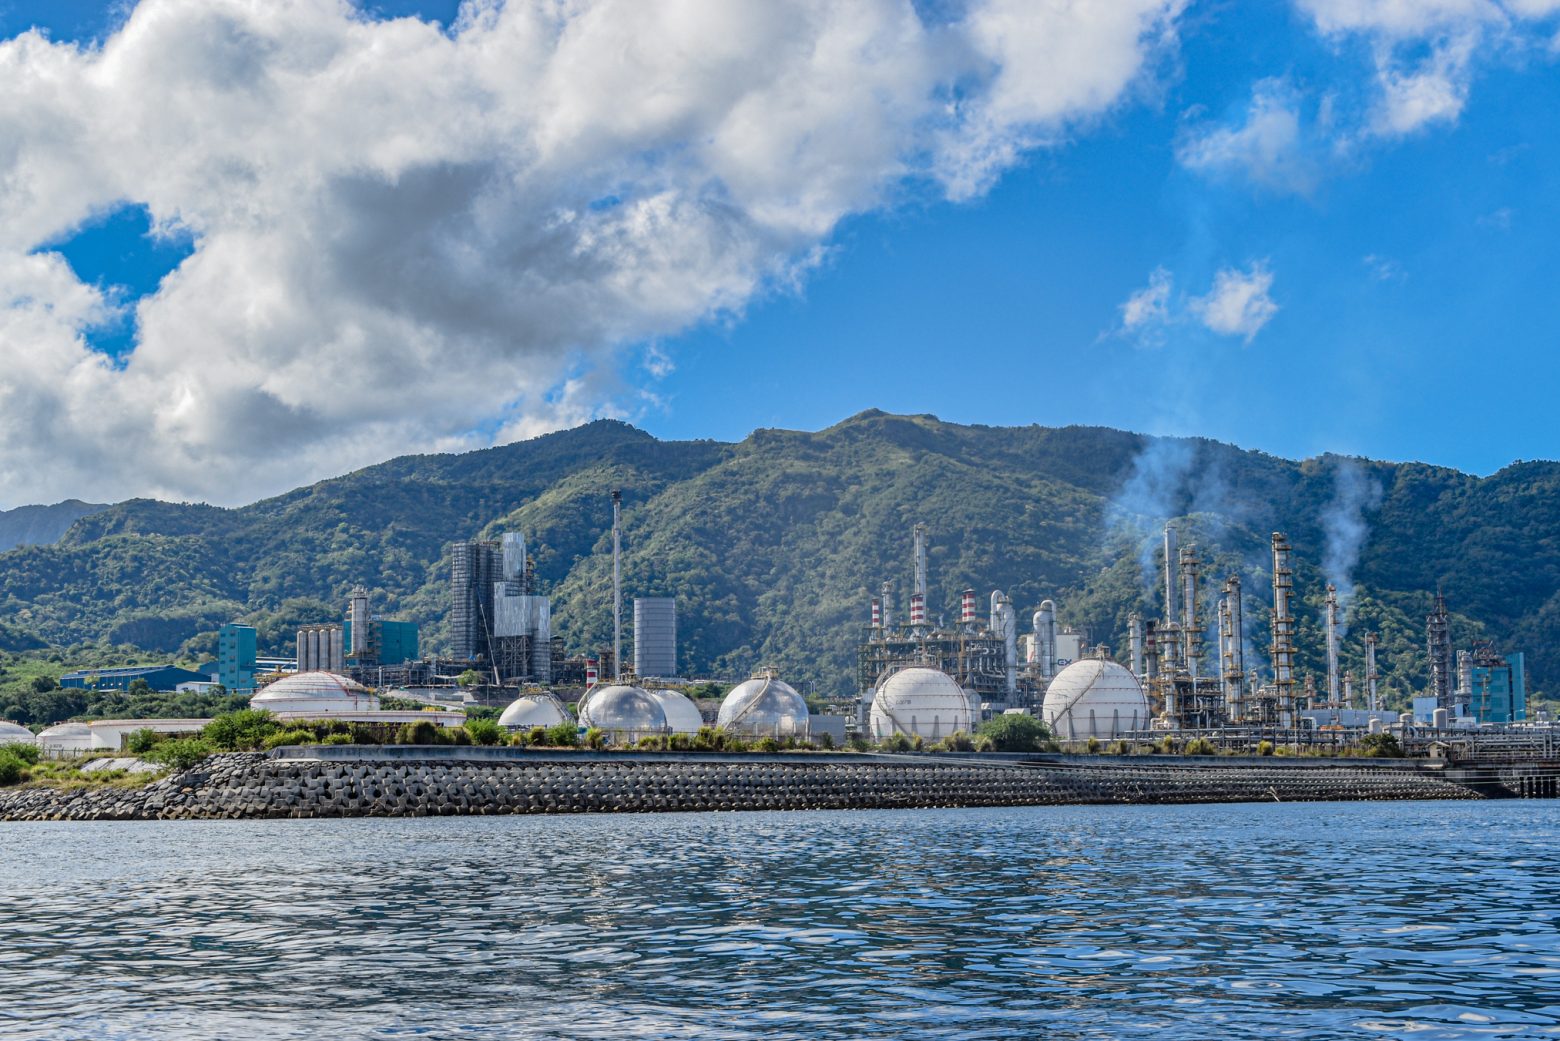 Das bestehende LNG-Terminal in der VIP-Meerenge auf den Philipinnen. Foto: Project VIP